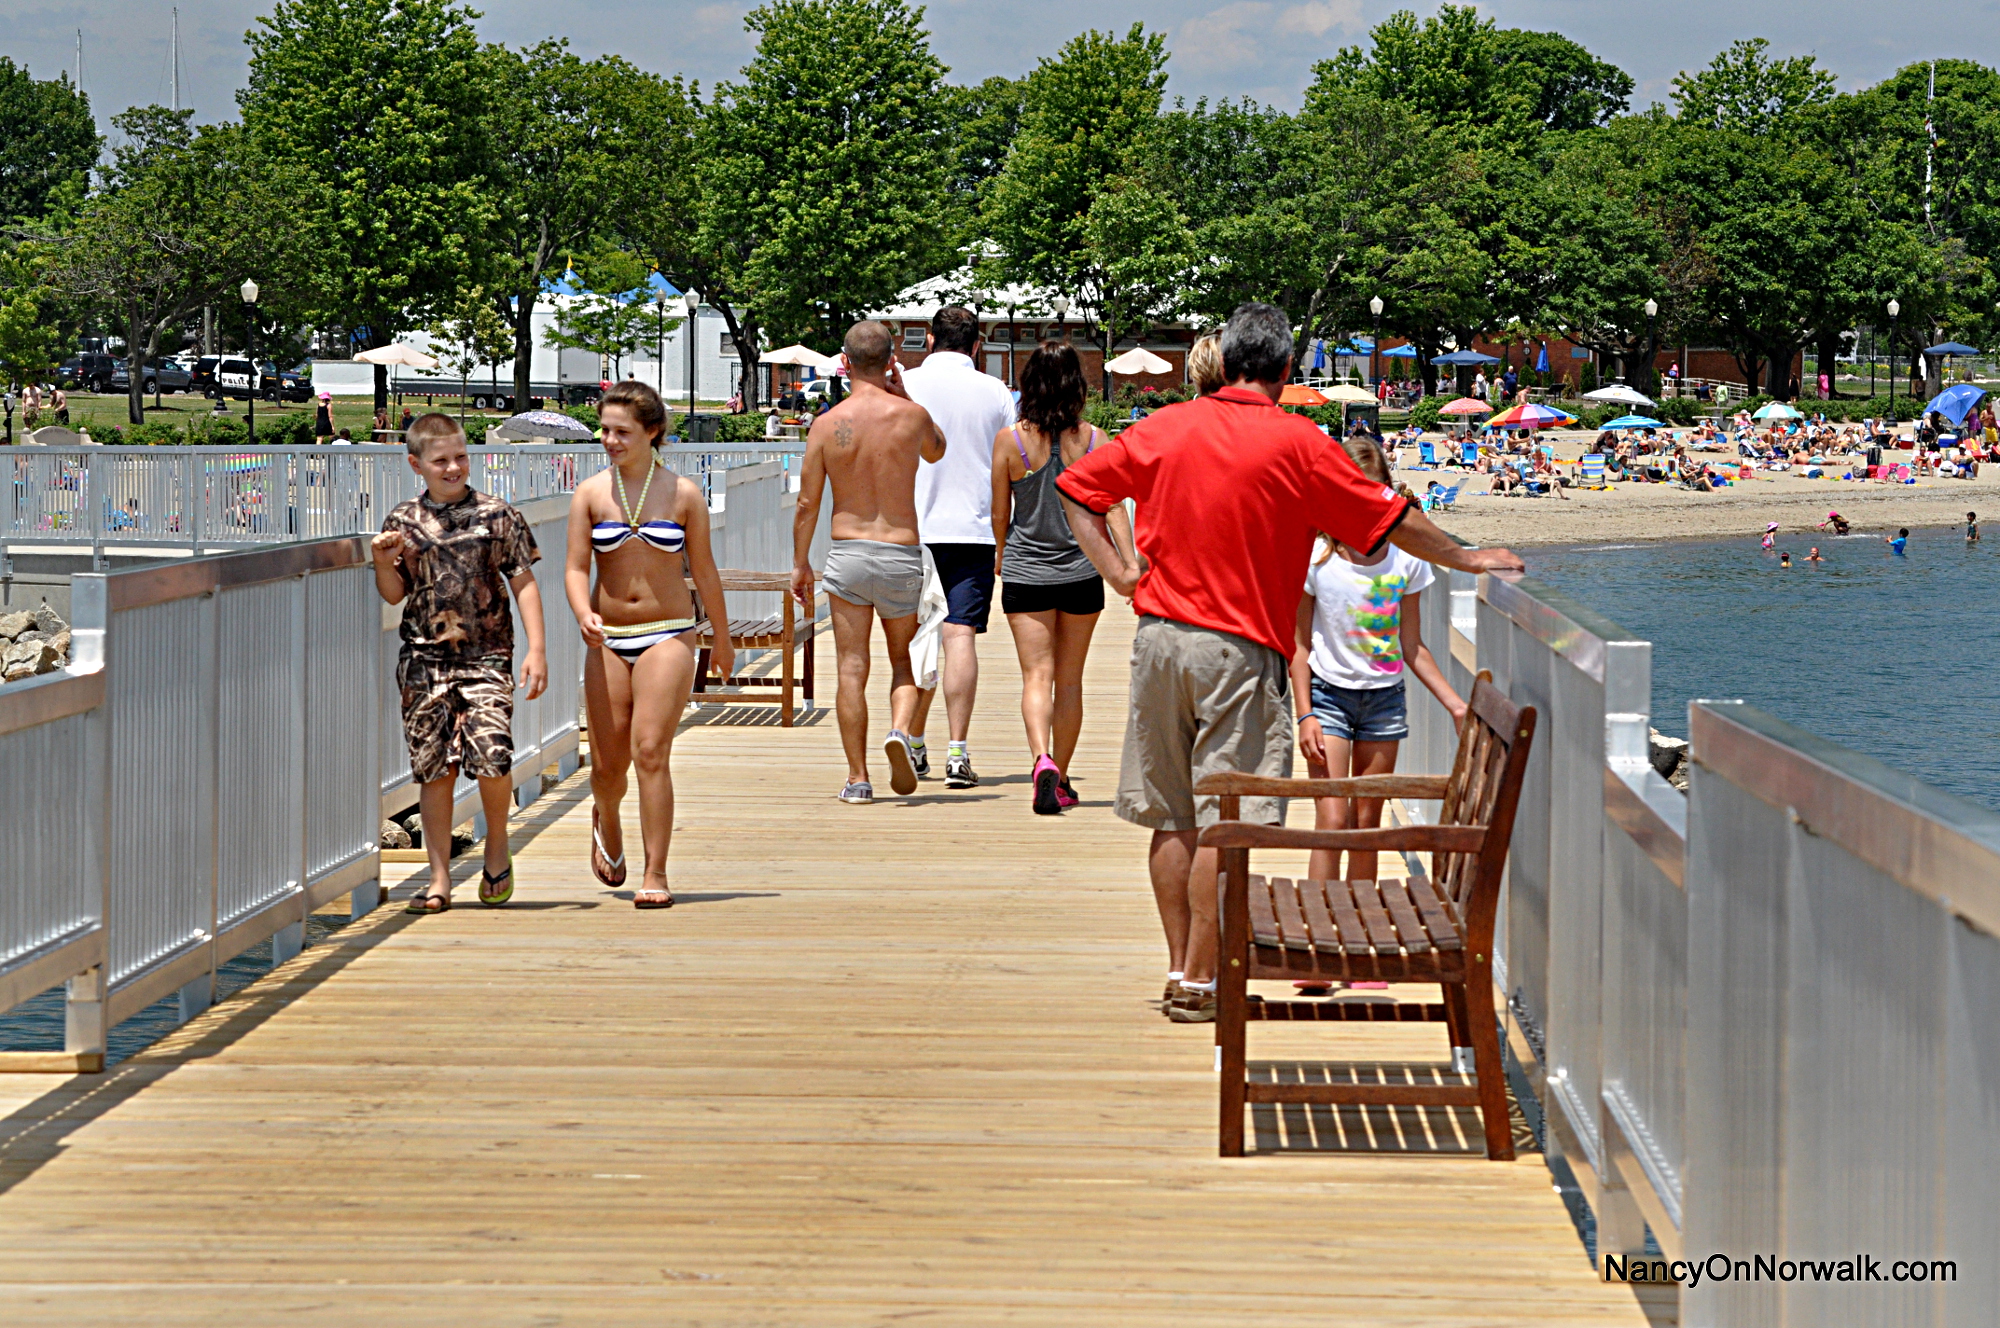 Norwalk bus tour ends on new beach pier | Nancy on Norwalk